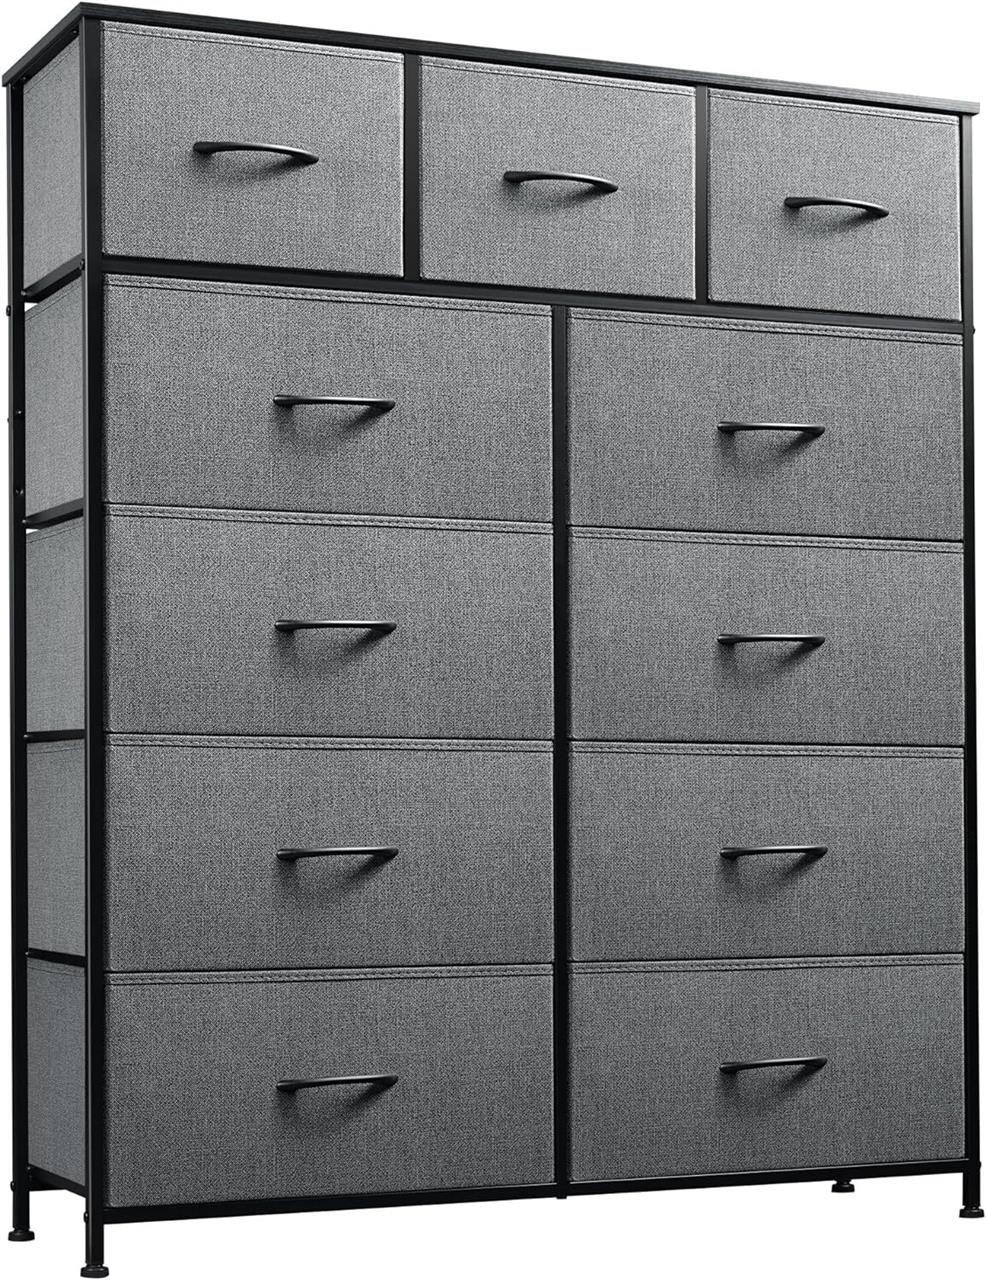 WLIVE 11-Drawer Dresser  Storage Tower  Grey